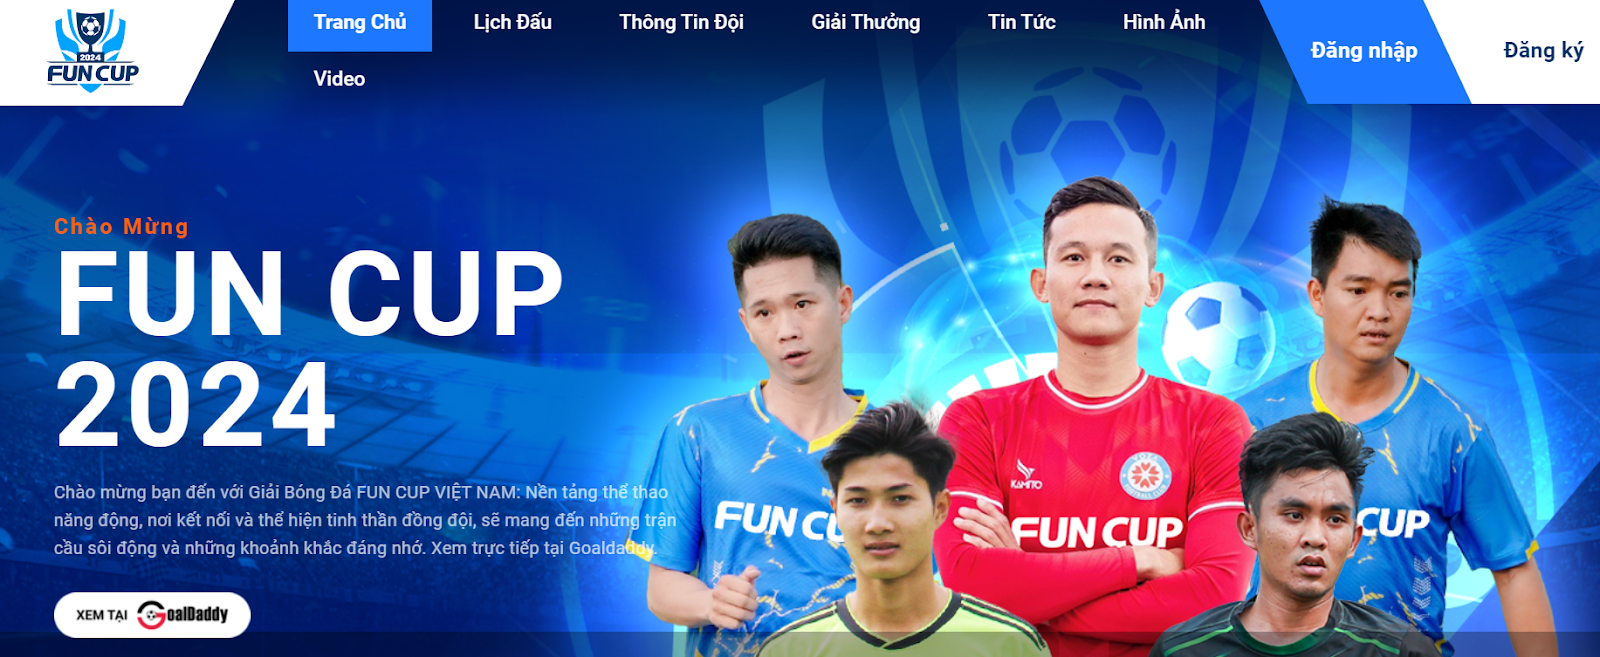 Fun Cup 2024  - Giải Bóng Đá Mới Nhất Và Hot Nhất Tại Việt Nam